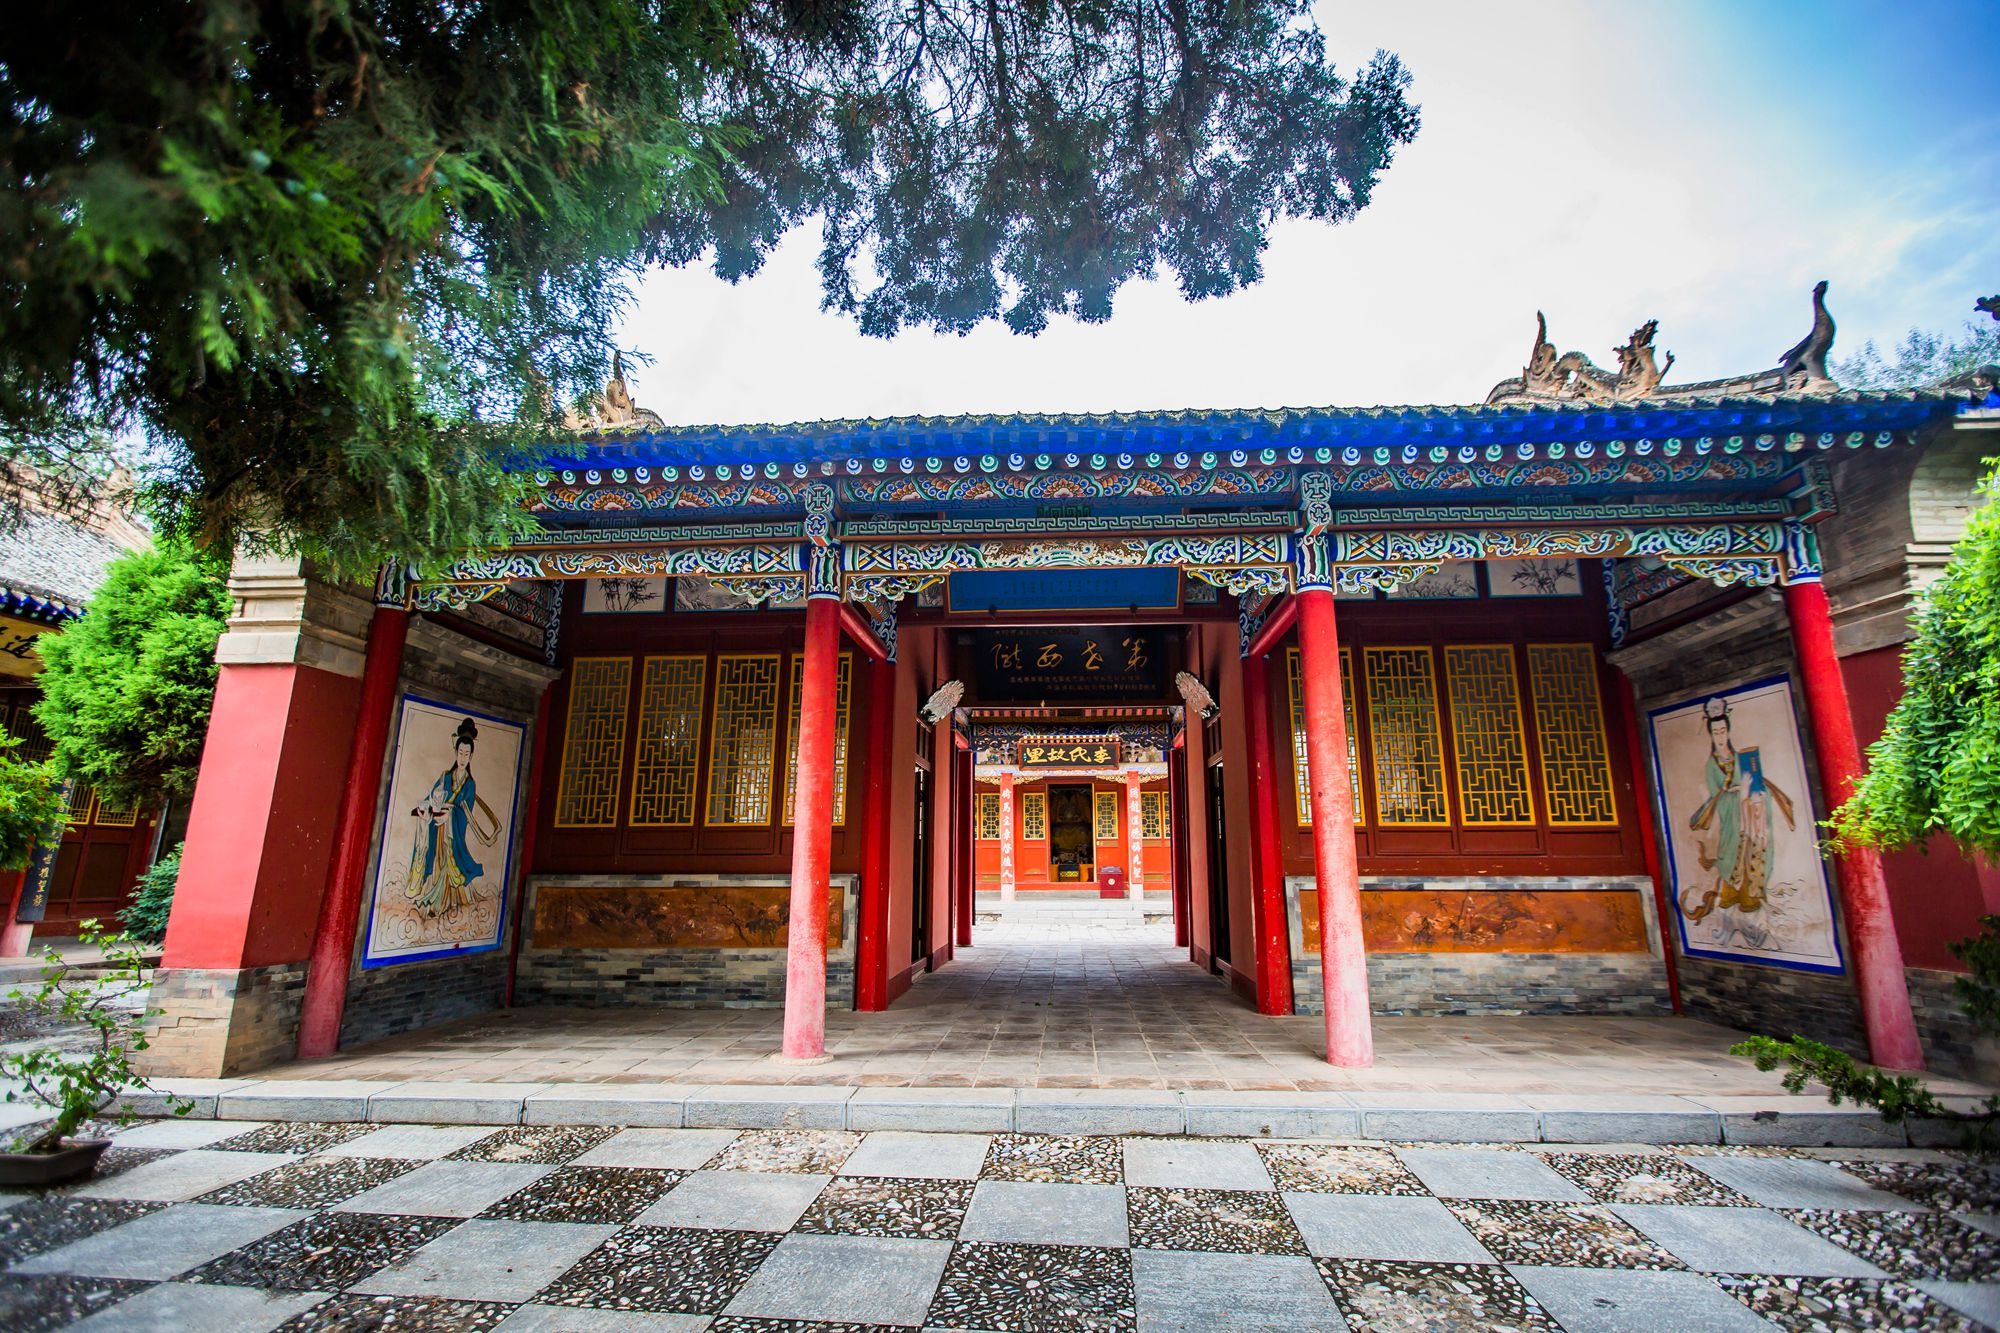 甘肃陇西有一座李家龙宫,历经1400多年历史,全球李氏都在此祭拜